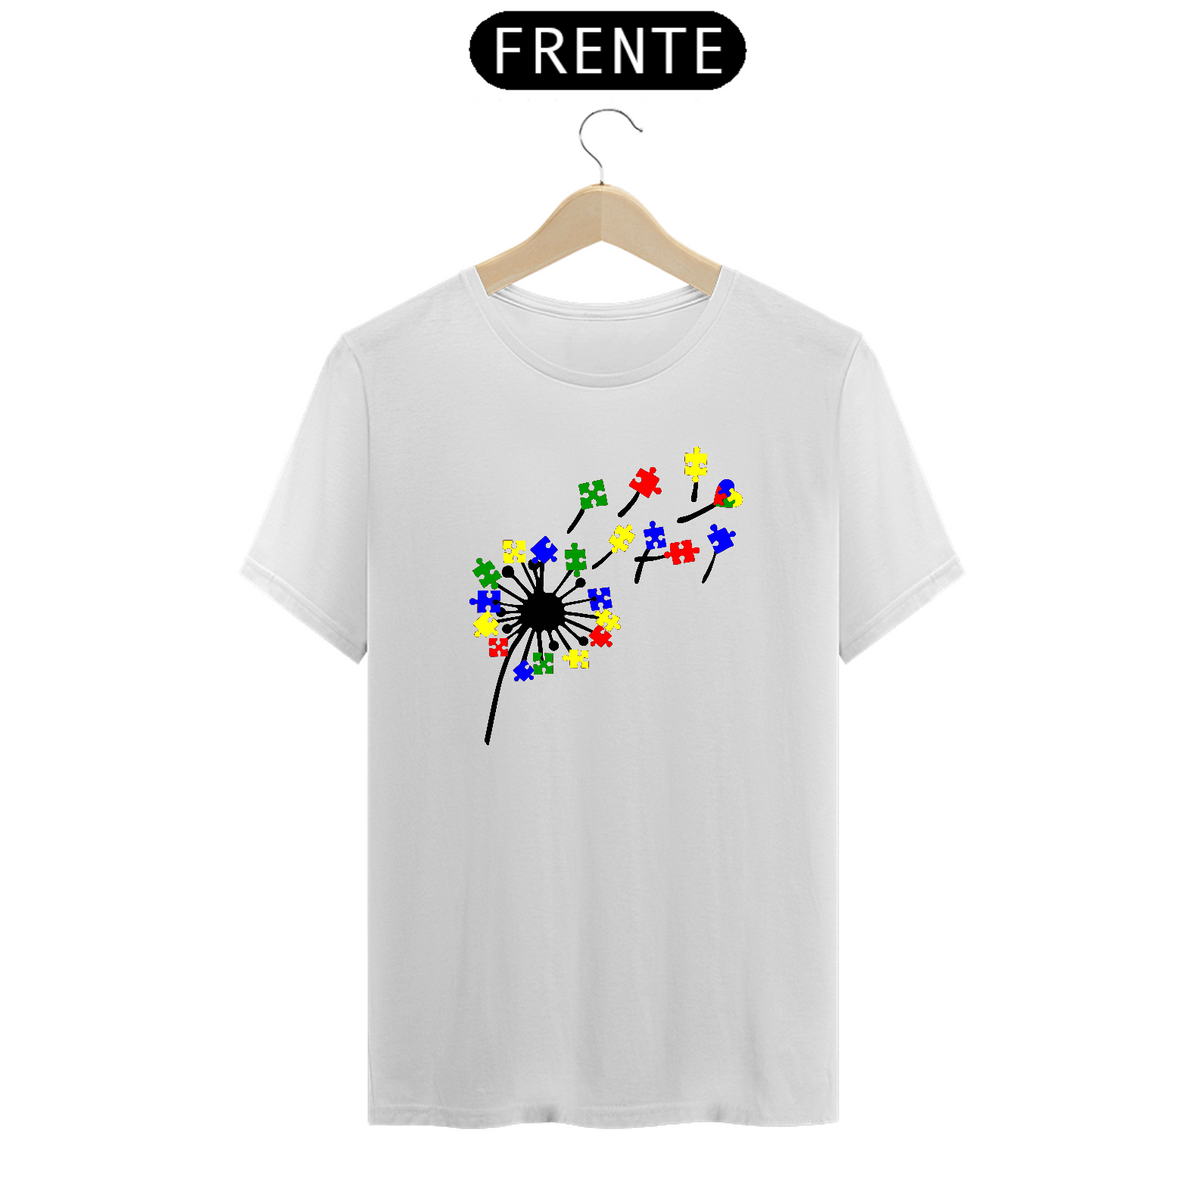 Nome do produto: T-shirt - autismo (pétalas de amor)